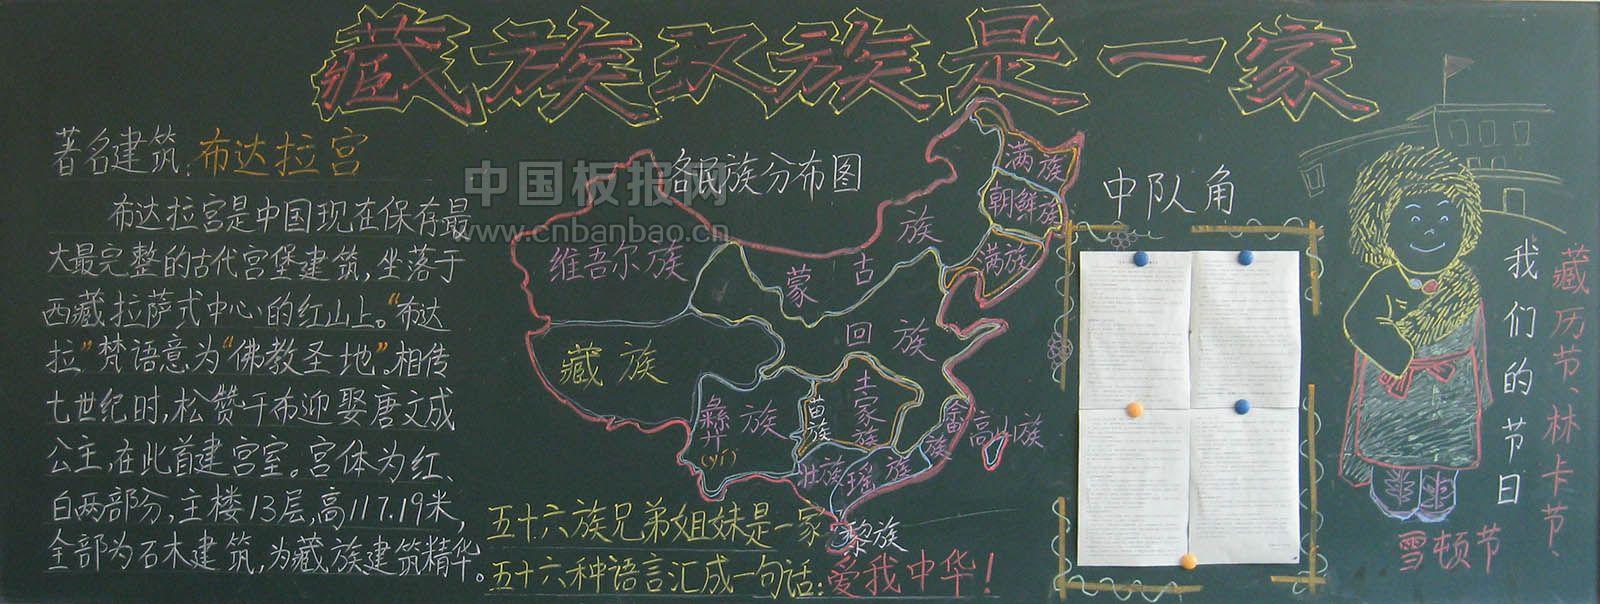 藏族汉族是一家黑板报